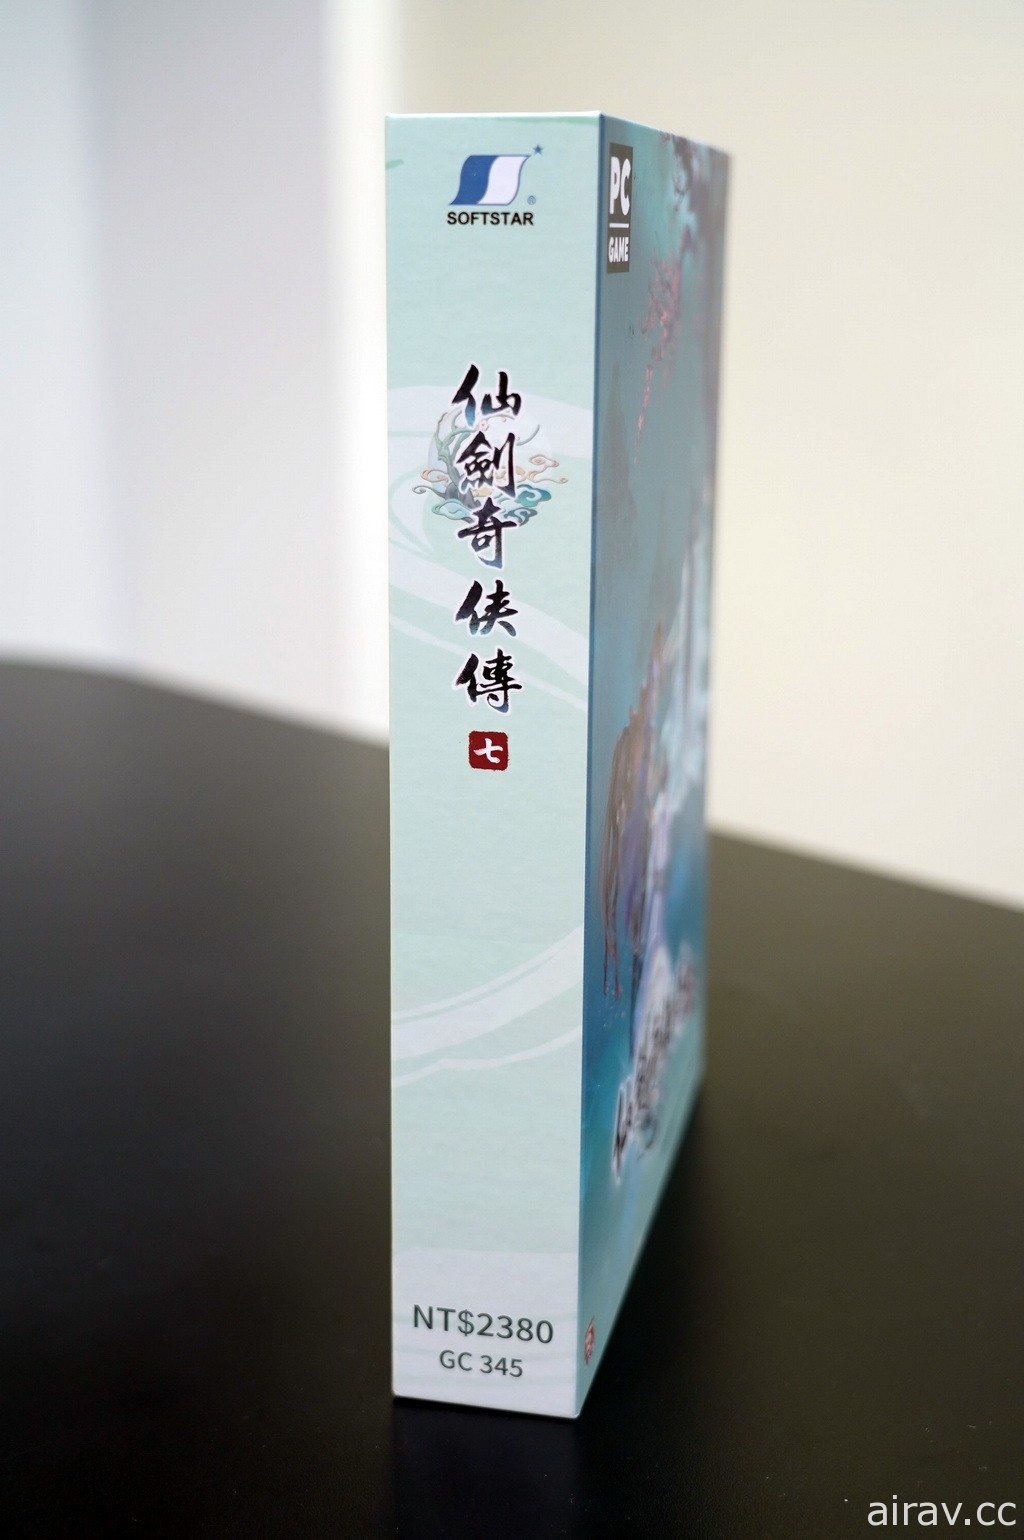 【開箱】《仙劍奇俠傳七》中文豪華版報導 一窺碧海青天劍武器模型、風物志等豐富內容